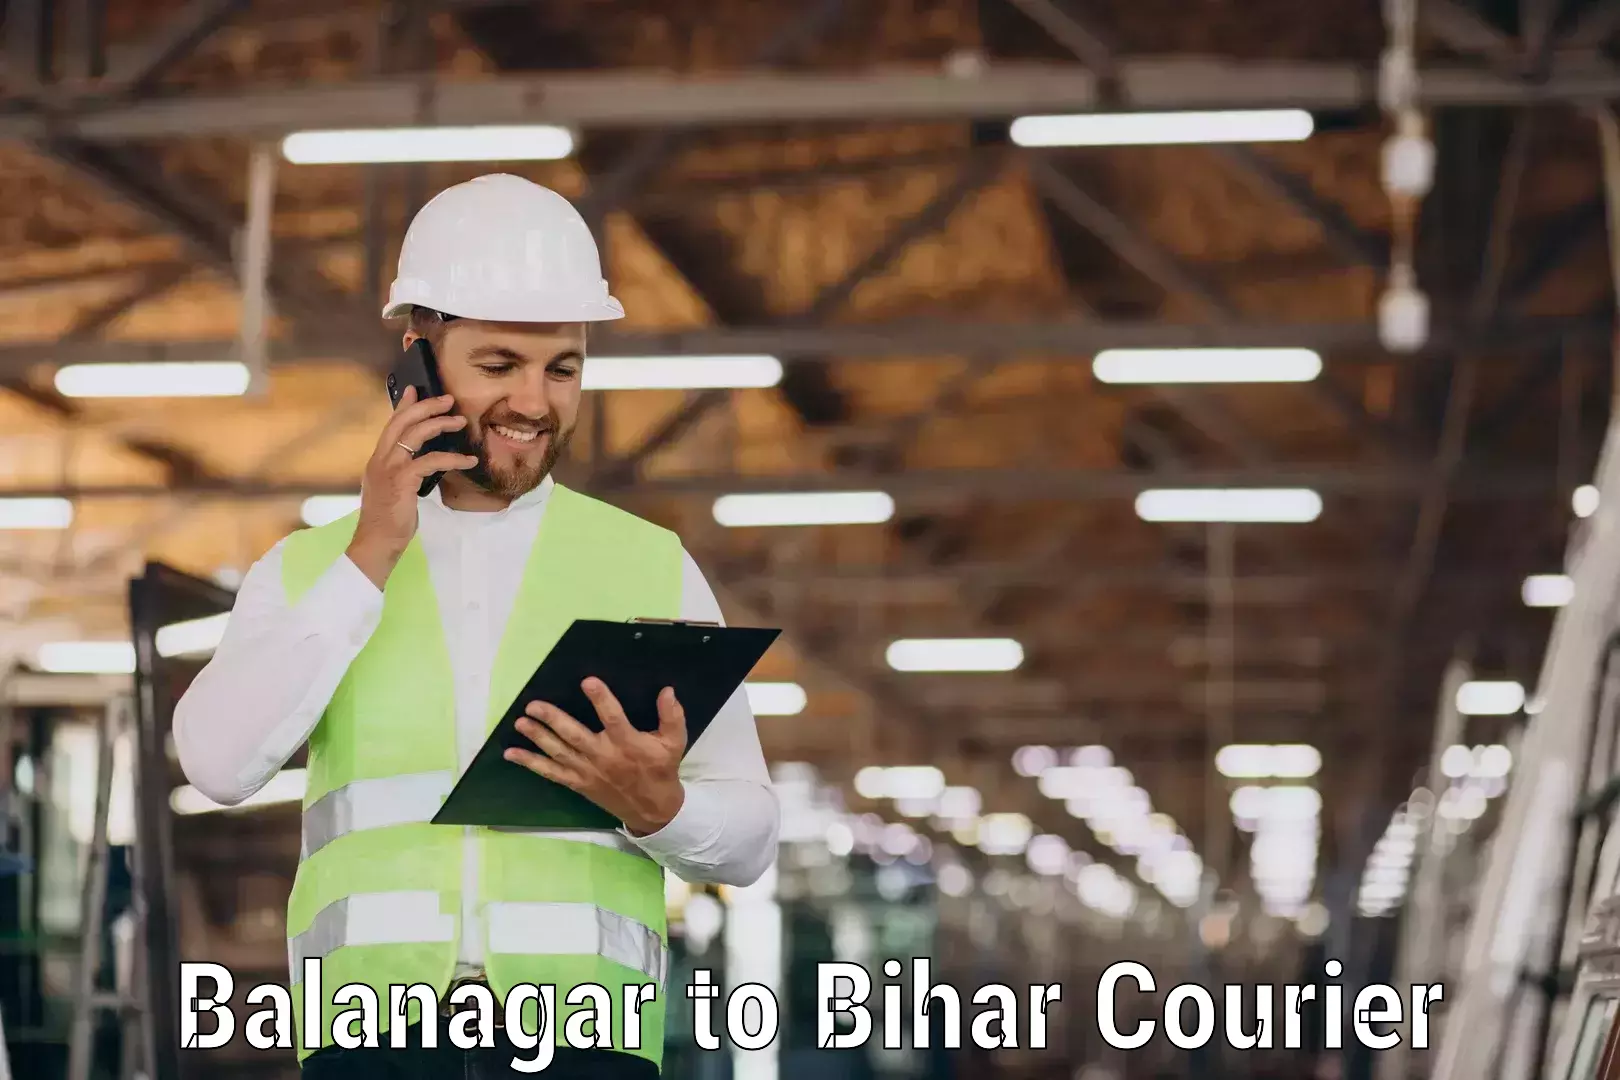 On-call courier service Balanagar to Malmaliya